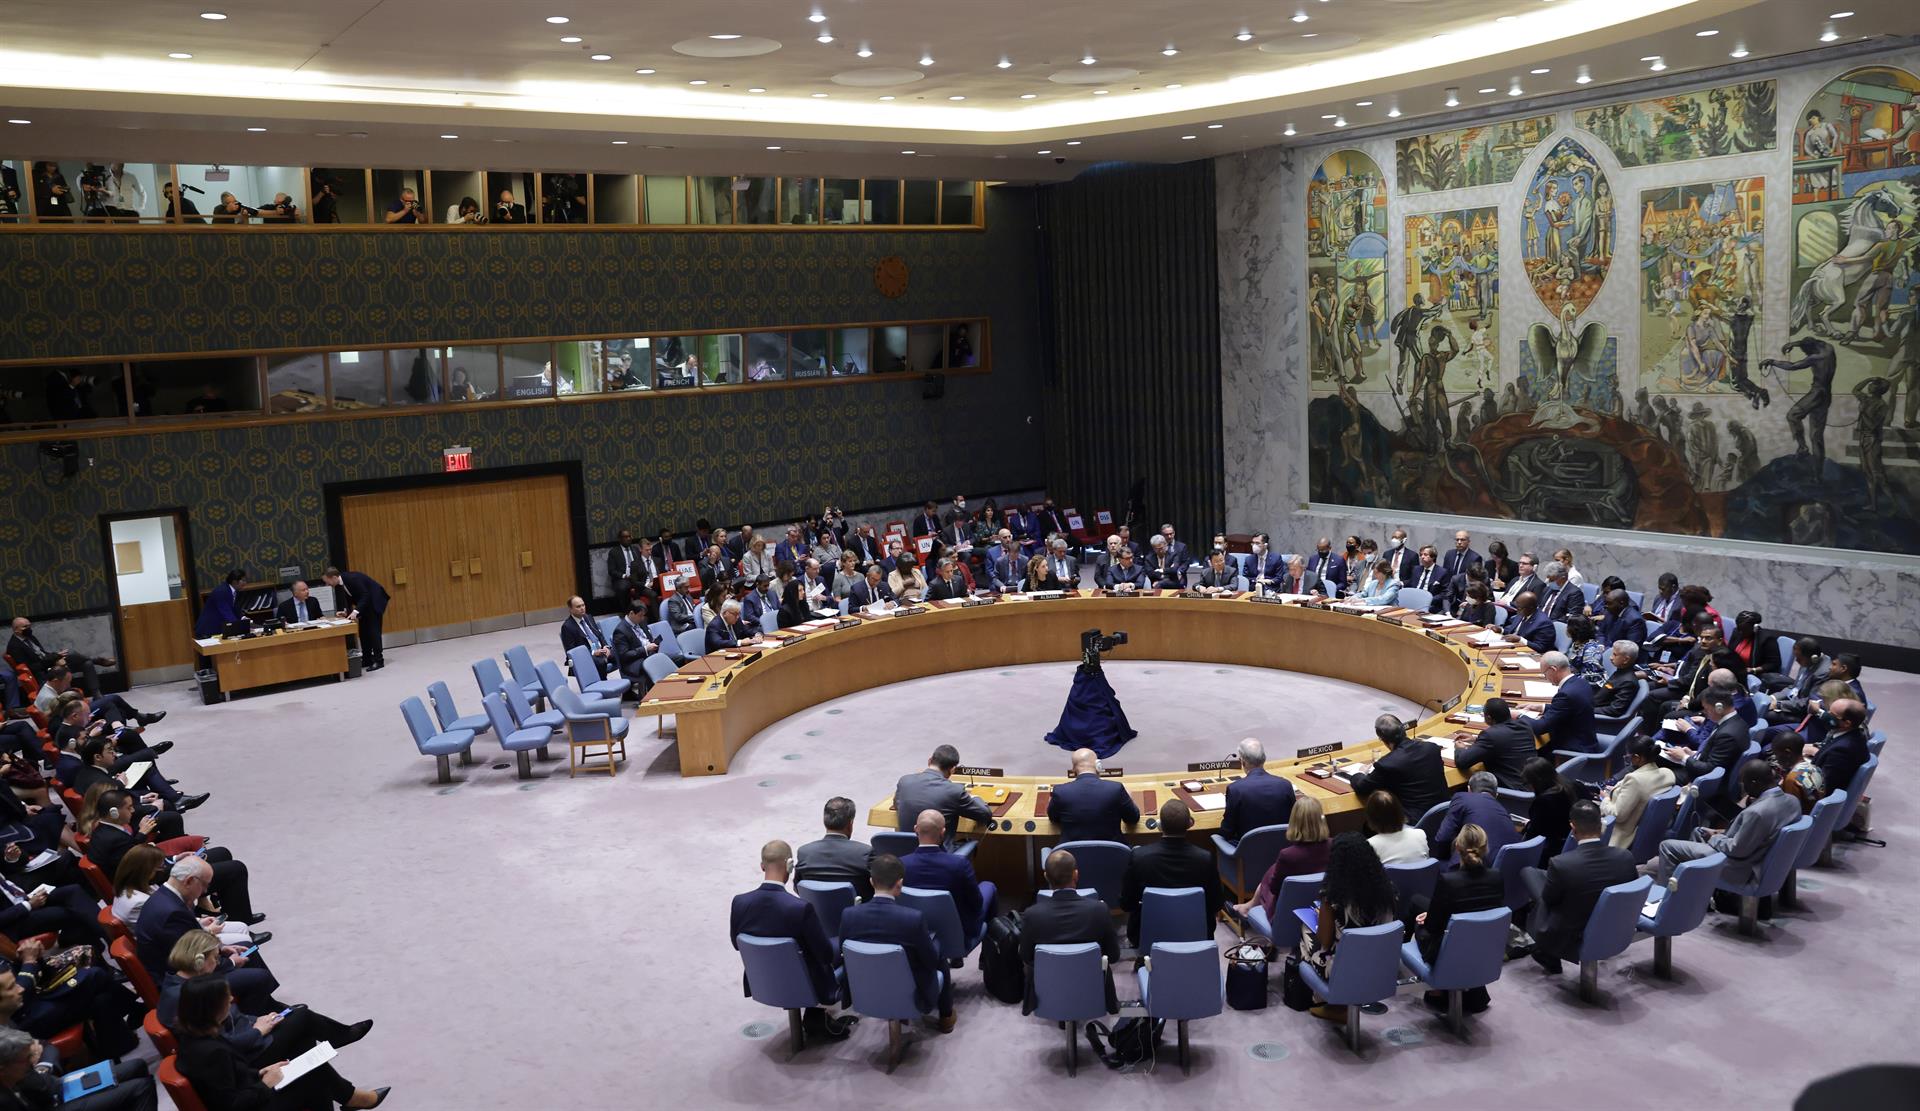 El Secretario General de las Naciones Unidas, Antonio Guterres, habla durante una reunión de alto nivel del Consejo de Seguridad, en una imagen de archivo. EFE/EPA/Justin Lane